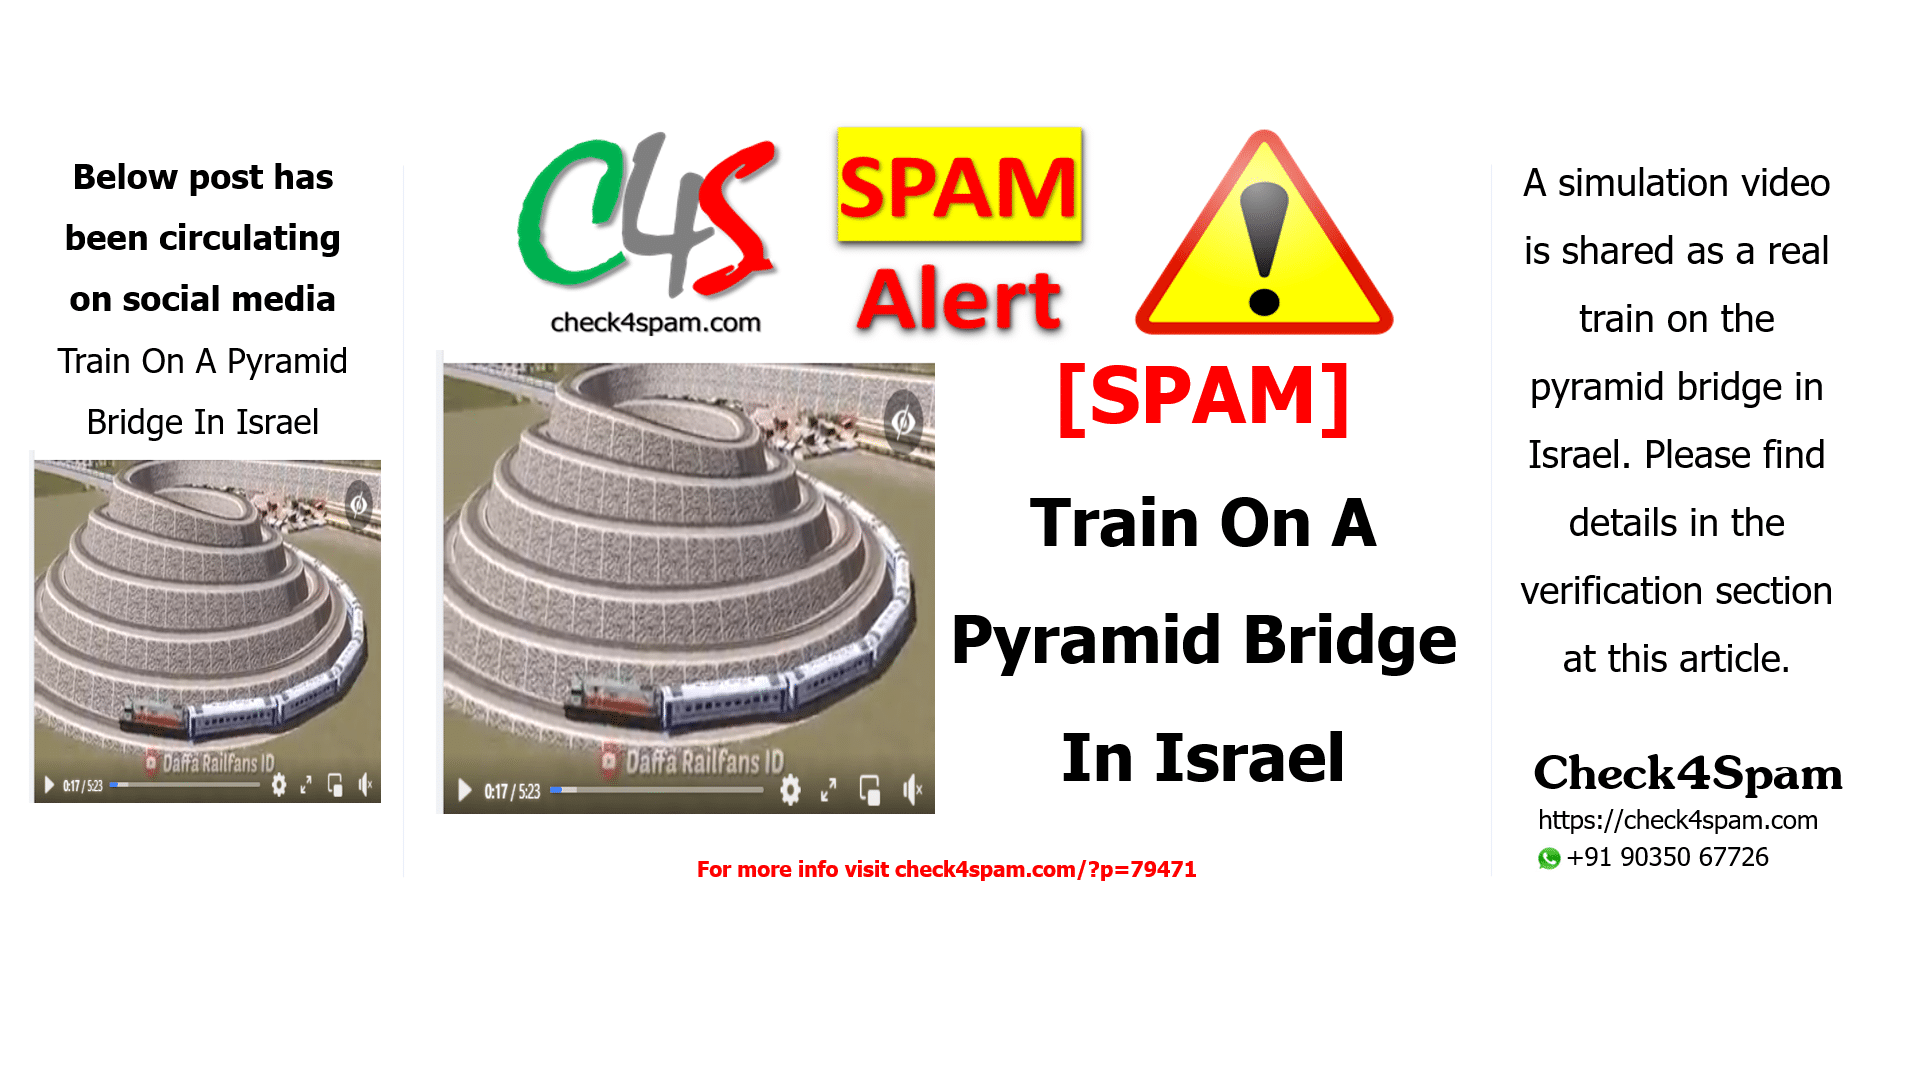 Train On A Pyramid Bridge In Israel